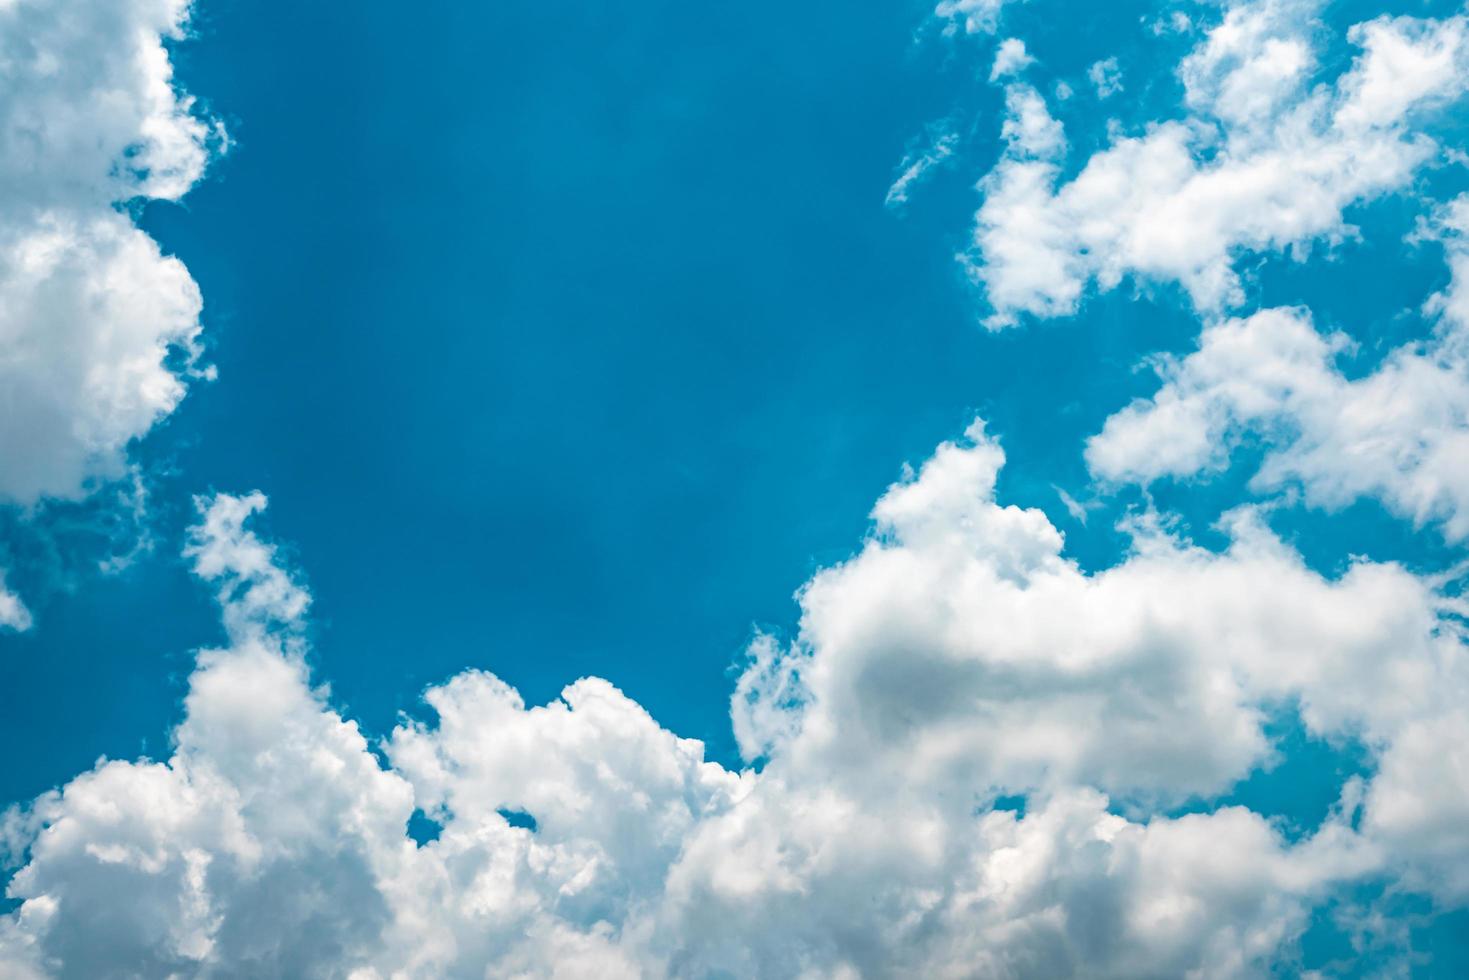 schöner blauer himmel und weißer kumuluswolkenhintergrund. hintergrund für frieden, sommer, heller tag. verwenden sie für fröhliche stimmung, spaß und urlaubstag auf sommerhintergrund foto